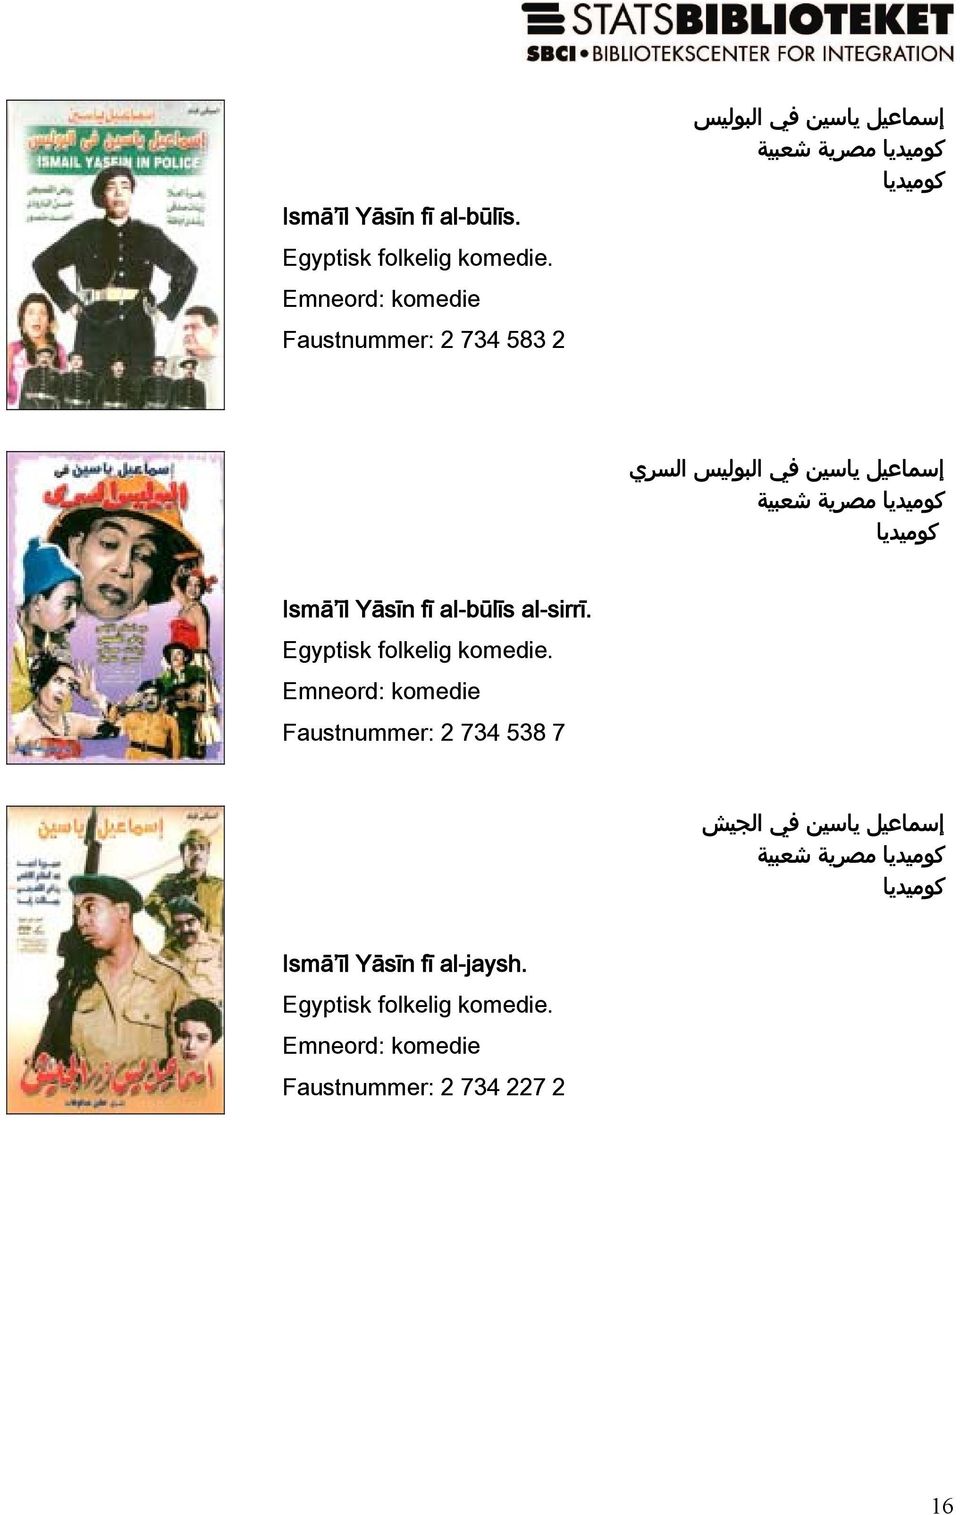 البوليس السري كوميديا مصرية شعبية كوميديا Ismā īl Yāsīn fī al-būlīs al-sirrī. Egyptisk folkelig komedie.